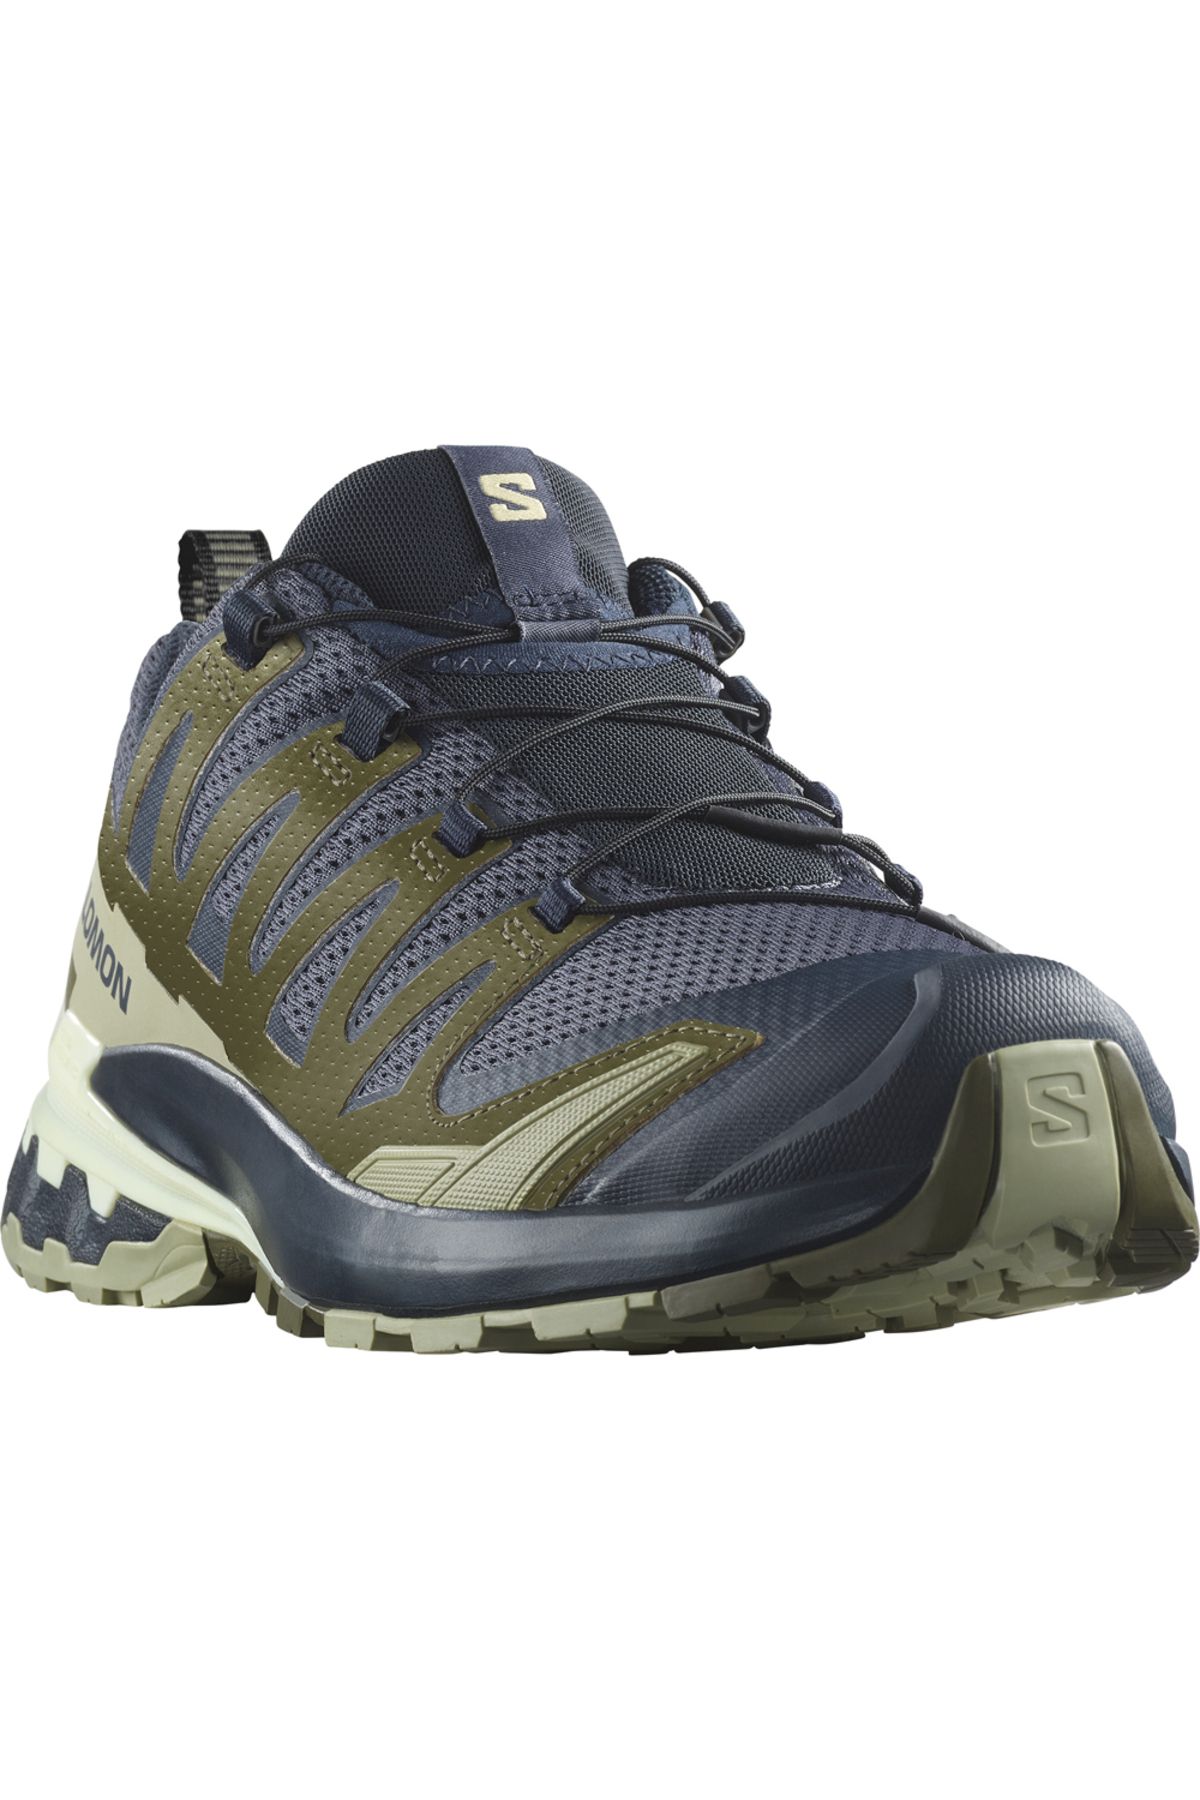 Salomon XA Pro 3D V9 Erkek Patika Koşu Ayakkabısı